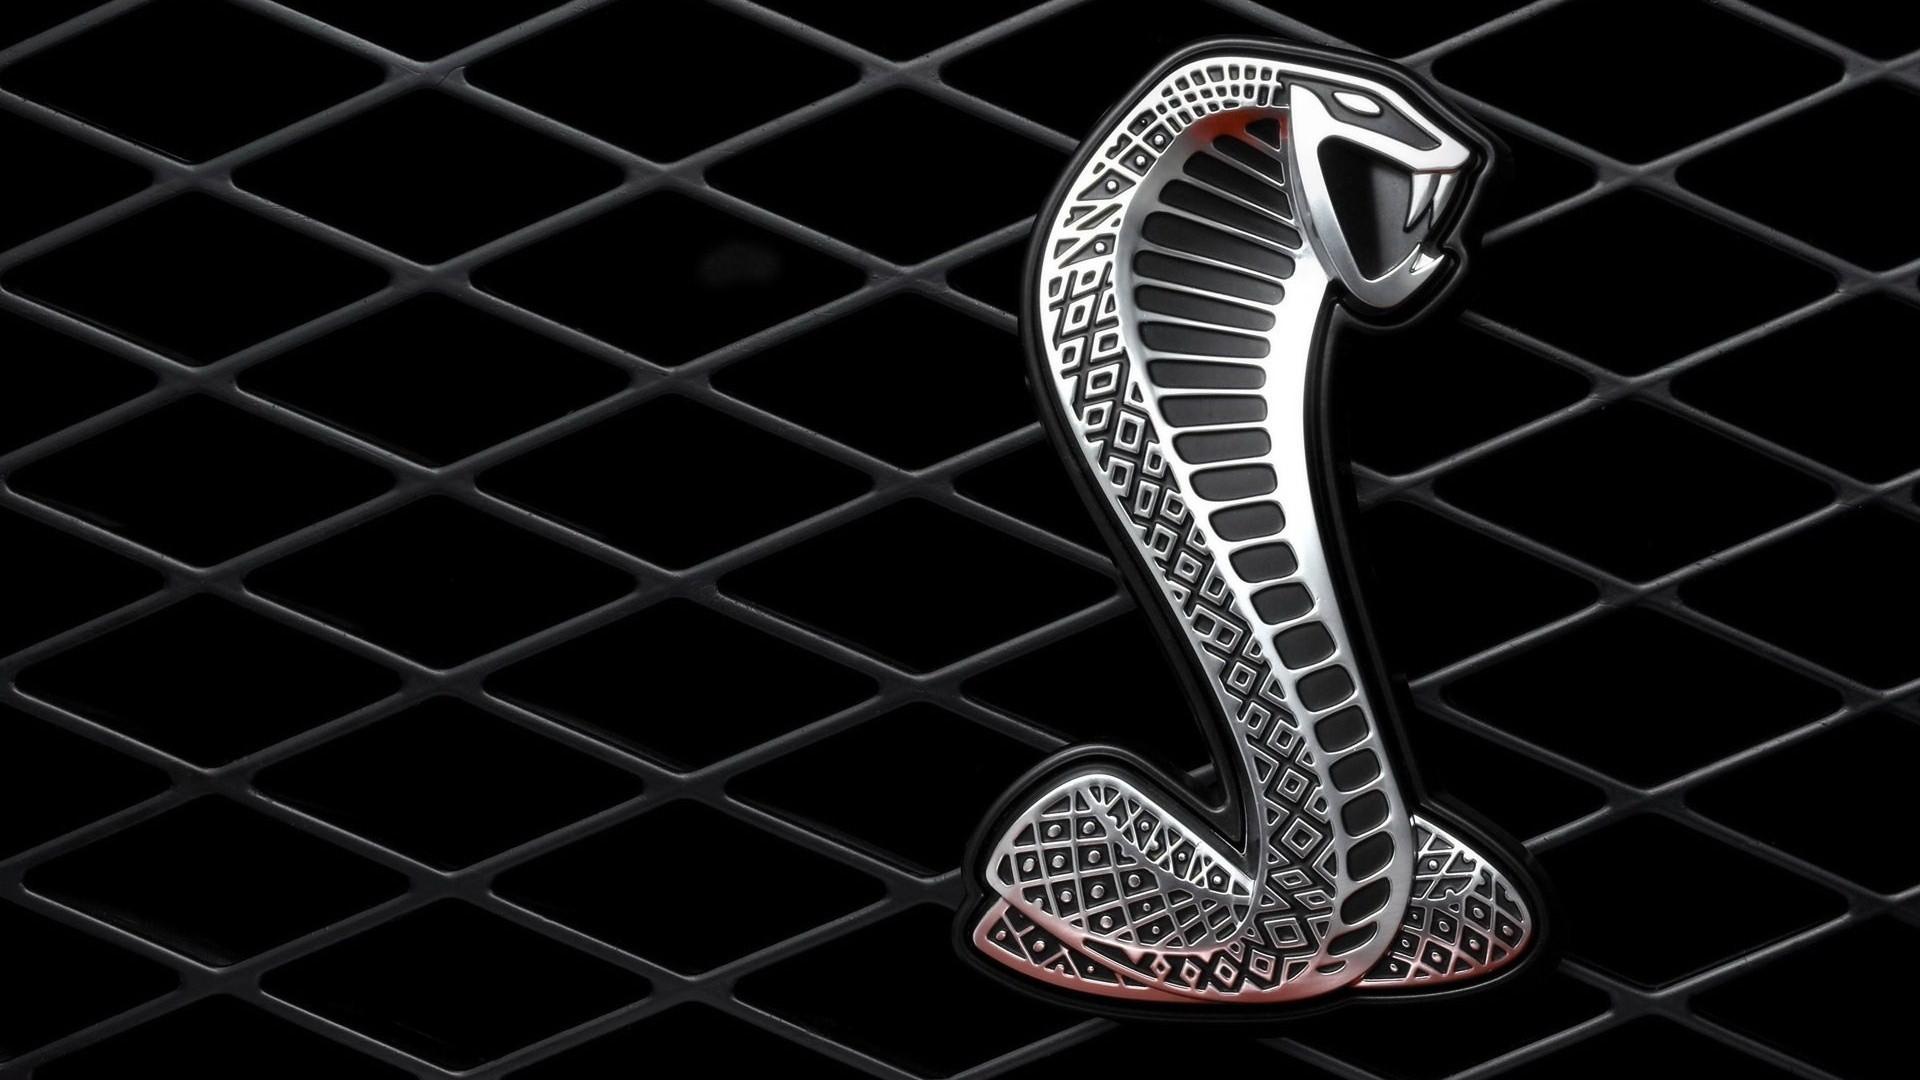 Cobra image